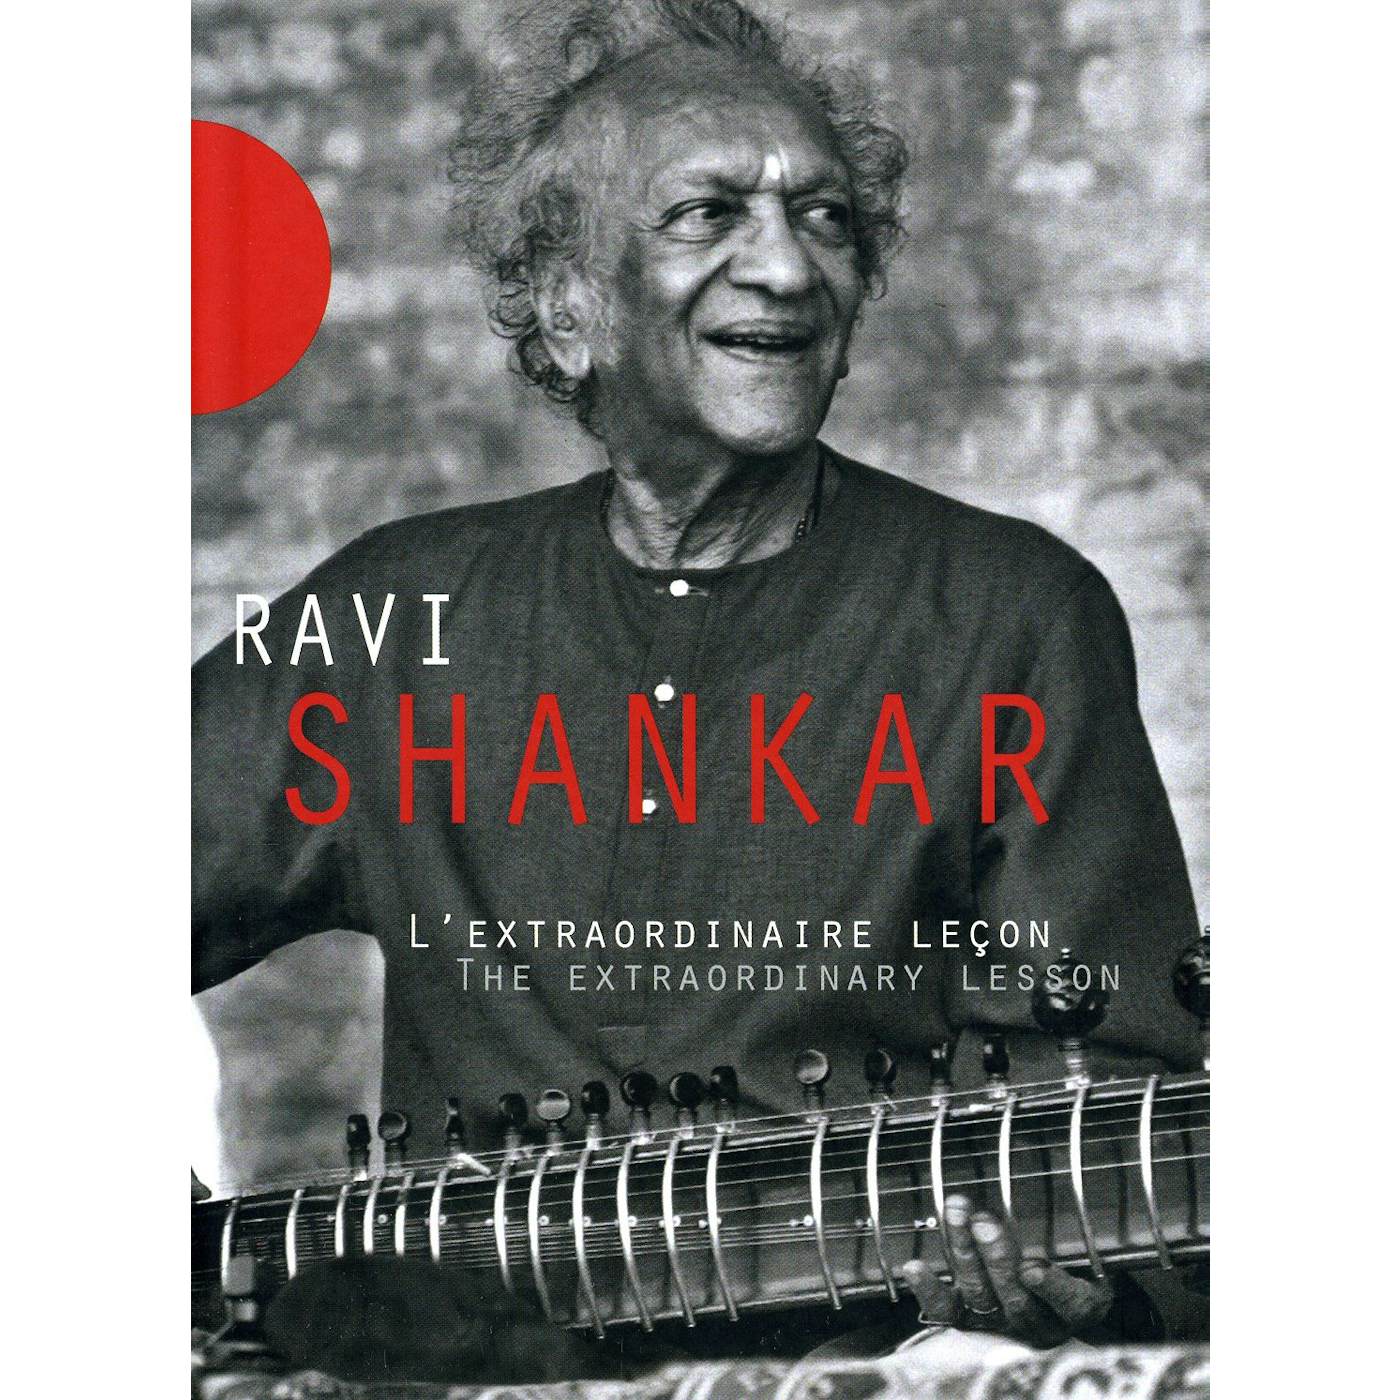 Ravi Shankar EXTRAORDINARY LESSON DVD